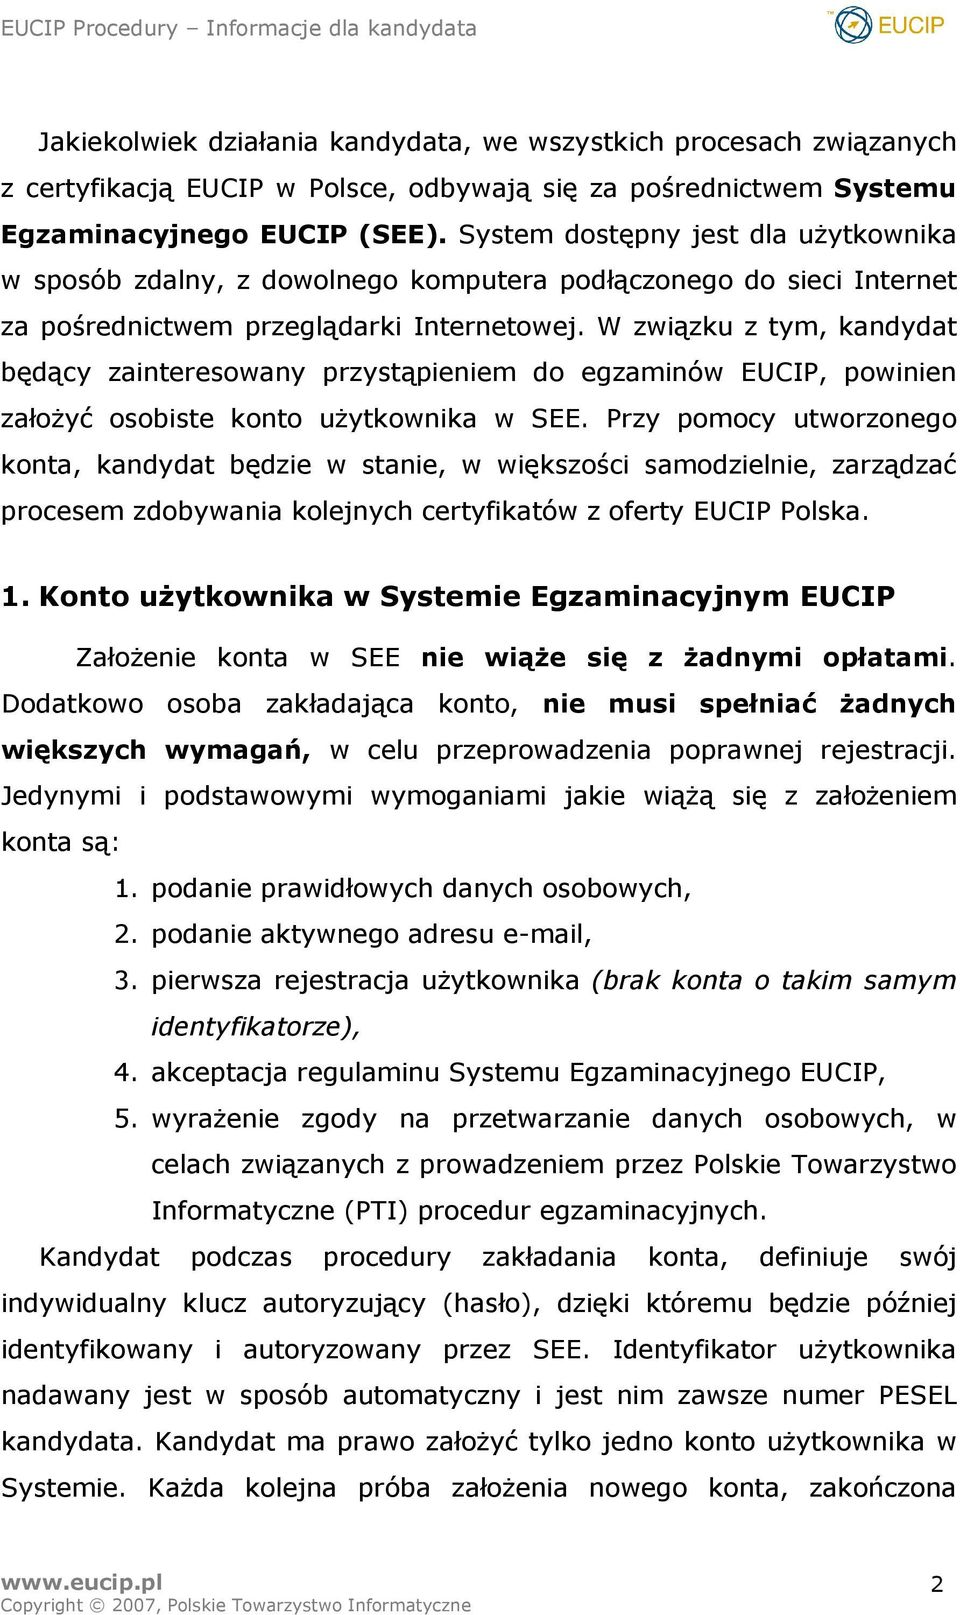 W związku z tym, kandydat będący zainteresowany przystąpieniem do egzaminów EUCIP, powinien założyć osobiste konto użytkownika w SEE.